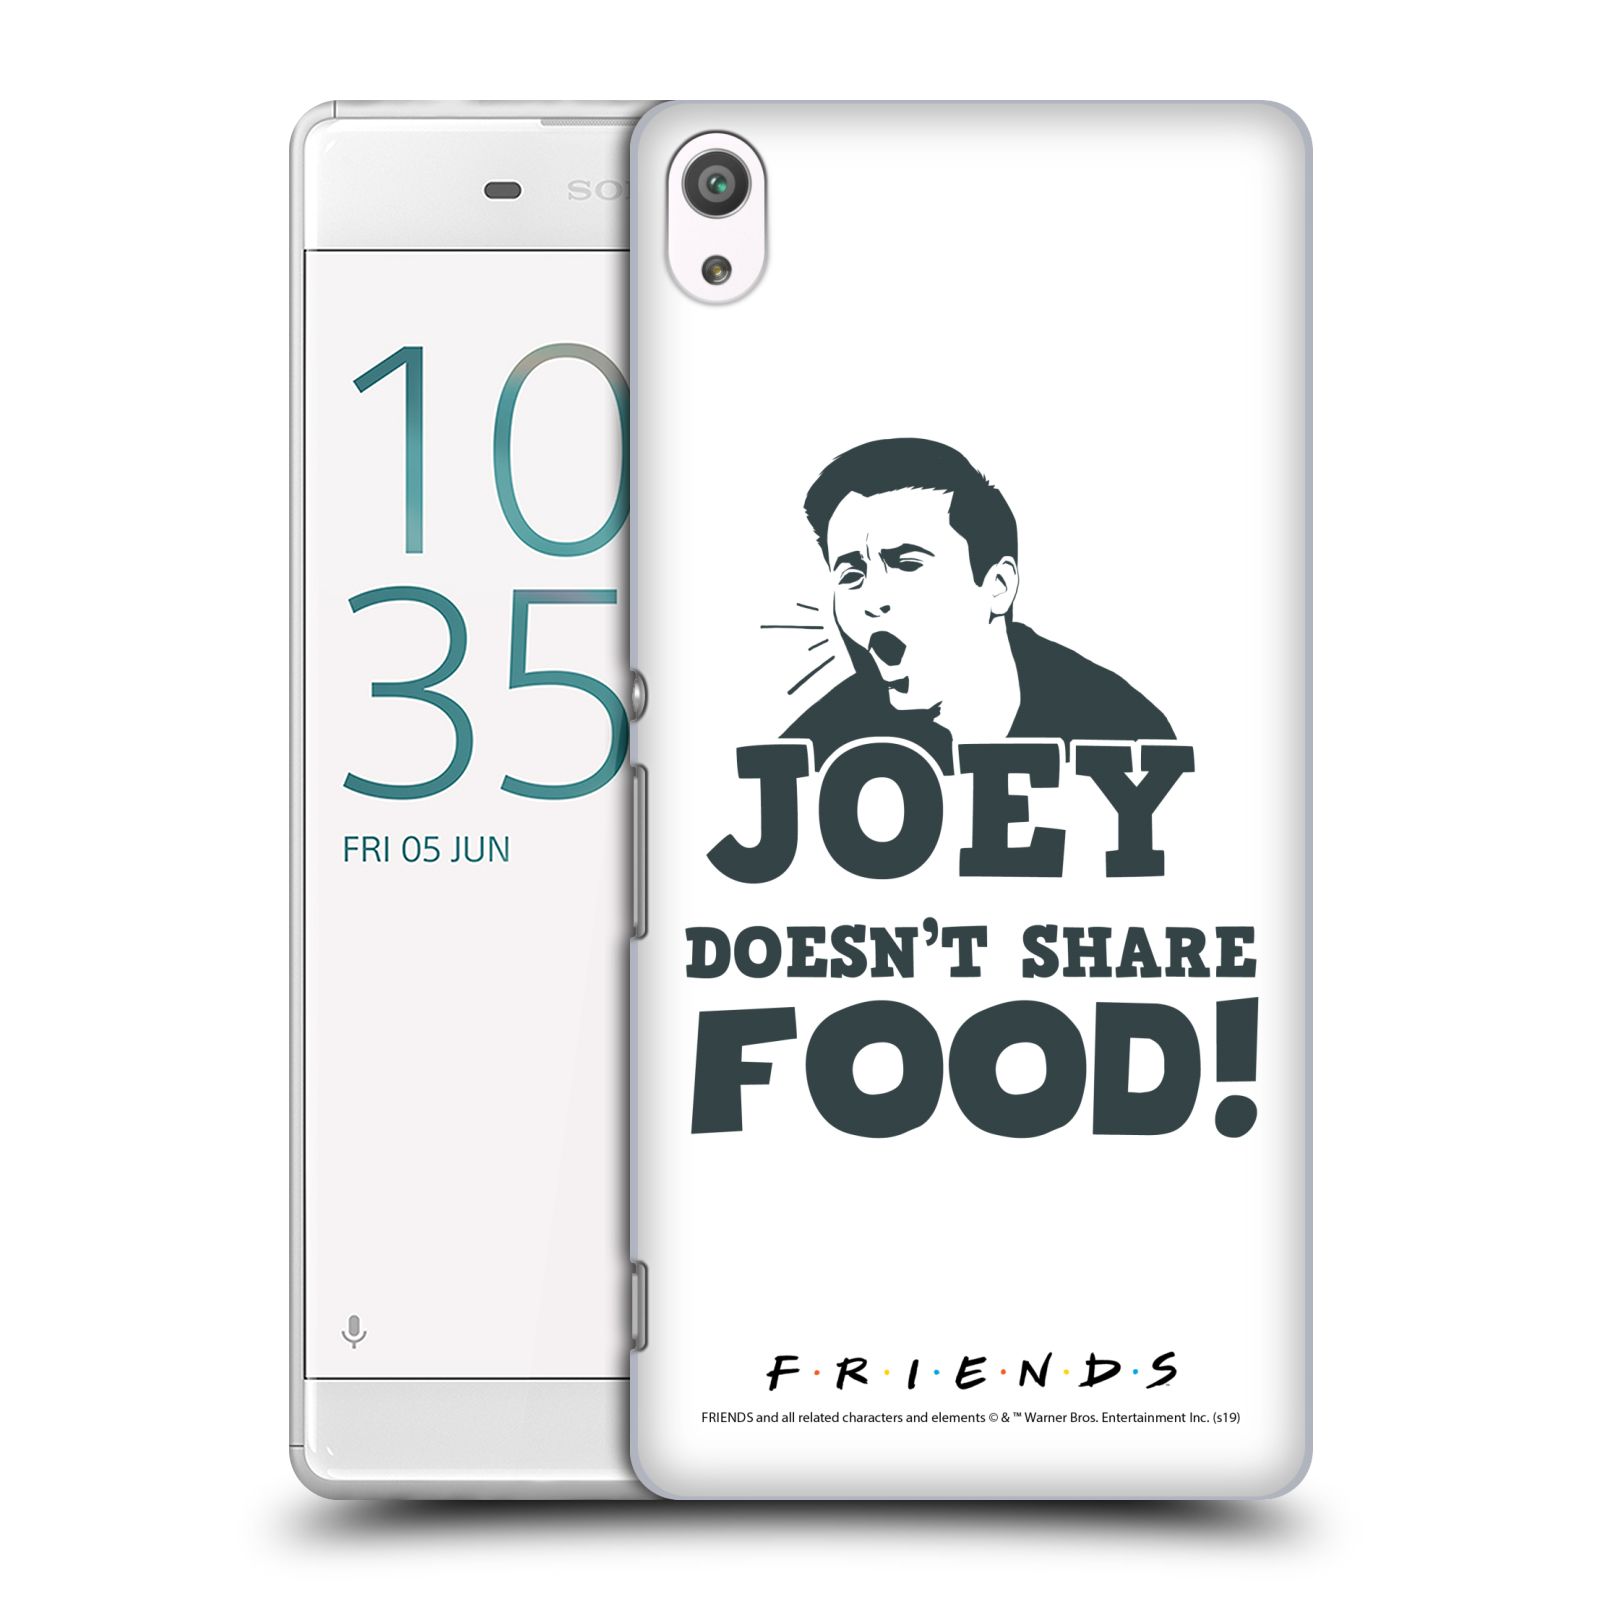 Pouzdro na mobil Sony Xperia XA ULTRA - HEAD CASE - Seriál Přátelé - Joey se o jídlo nedělí